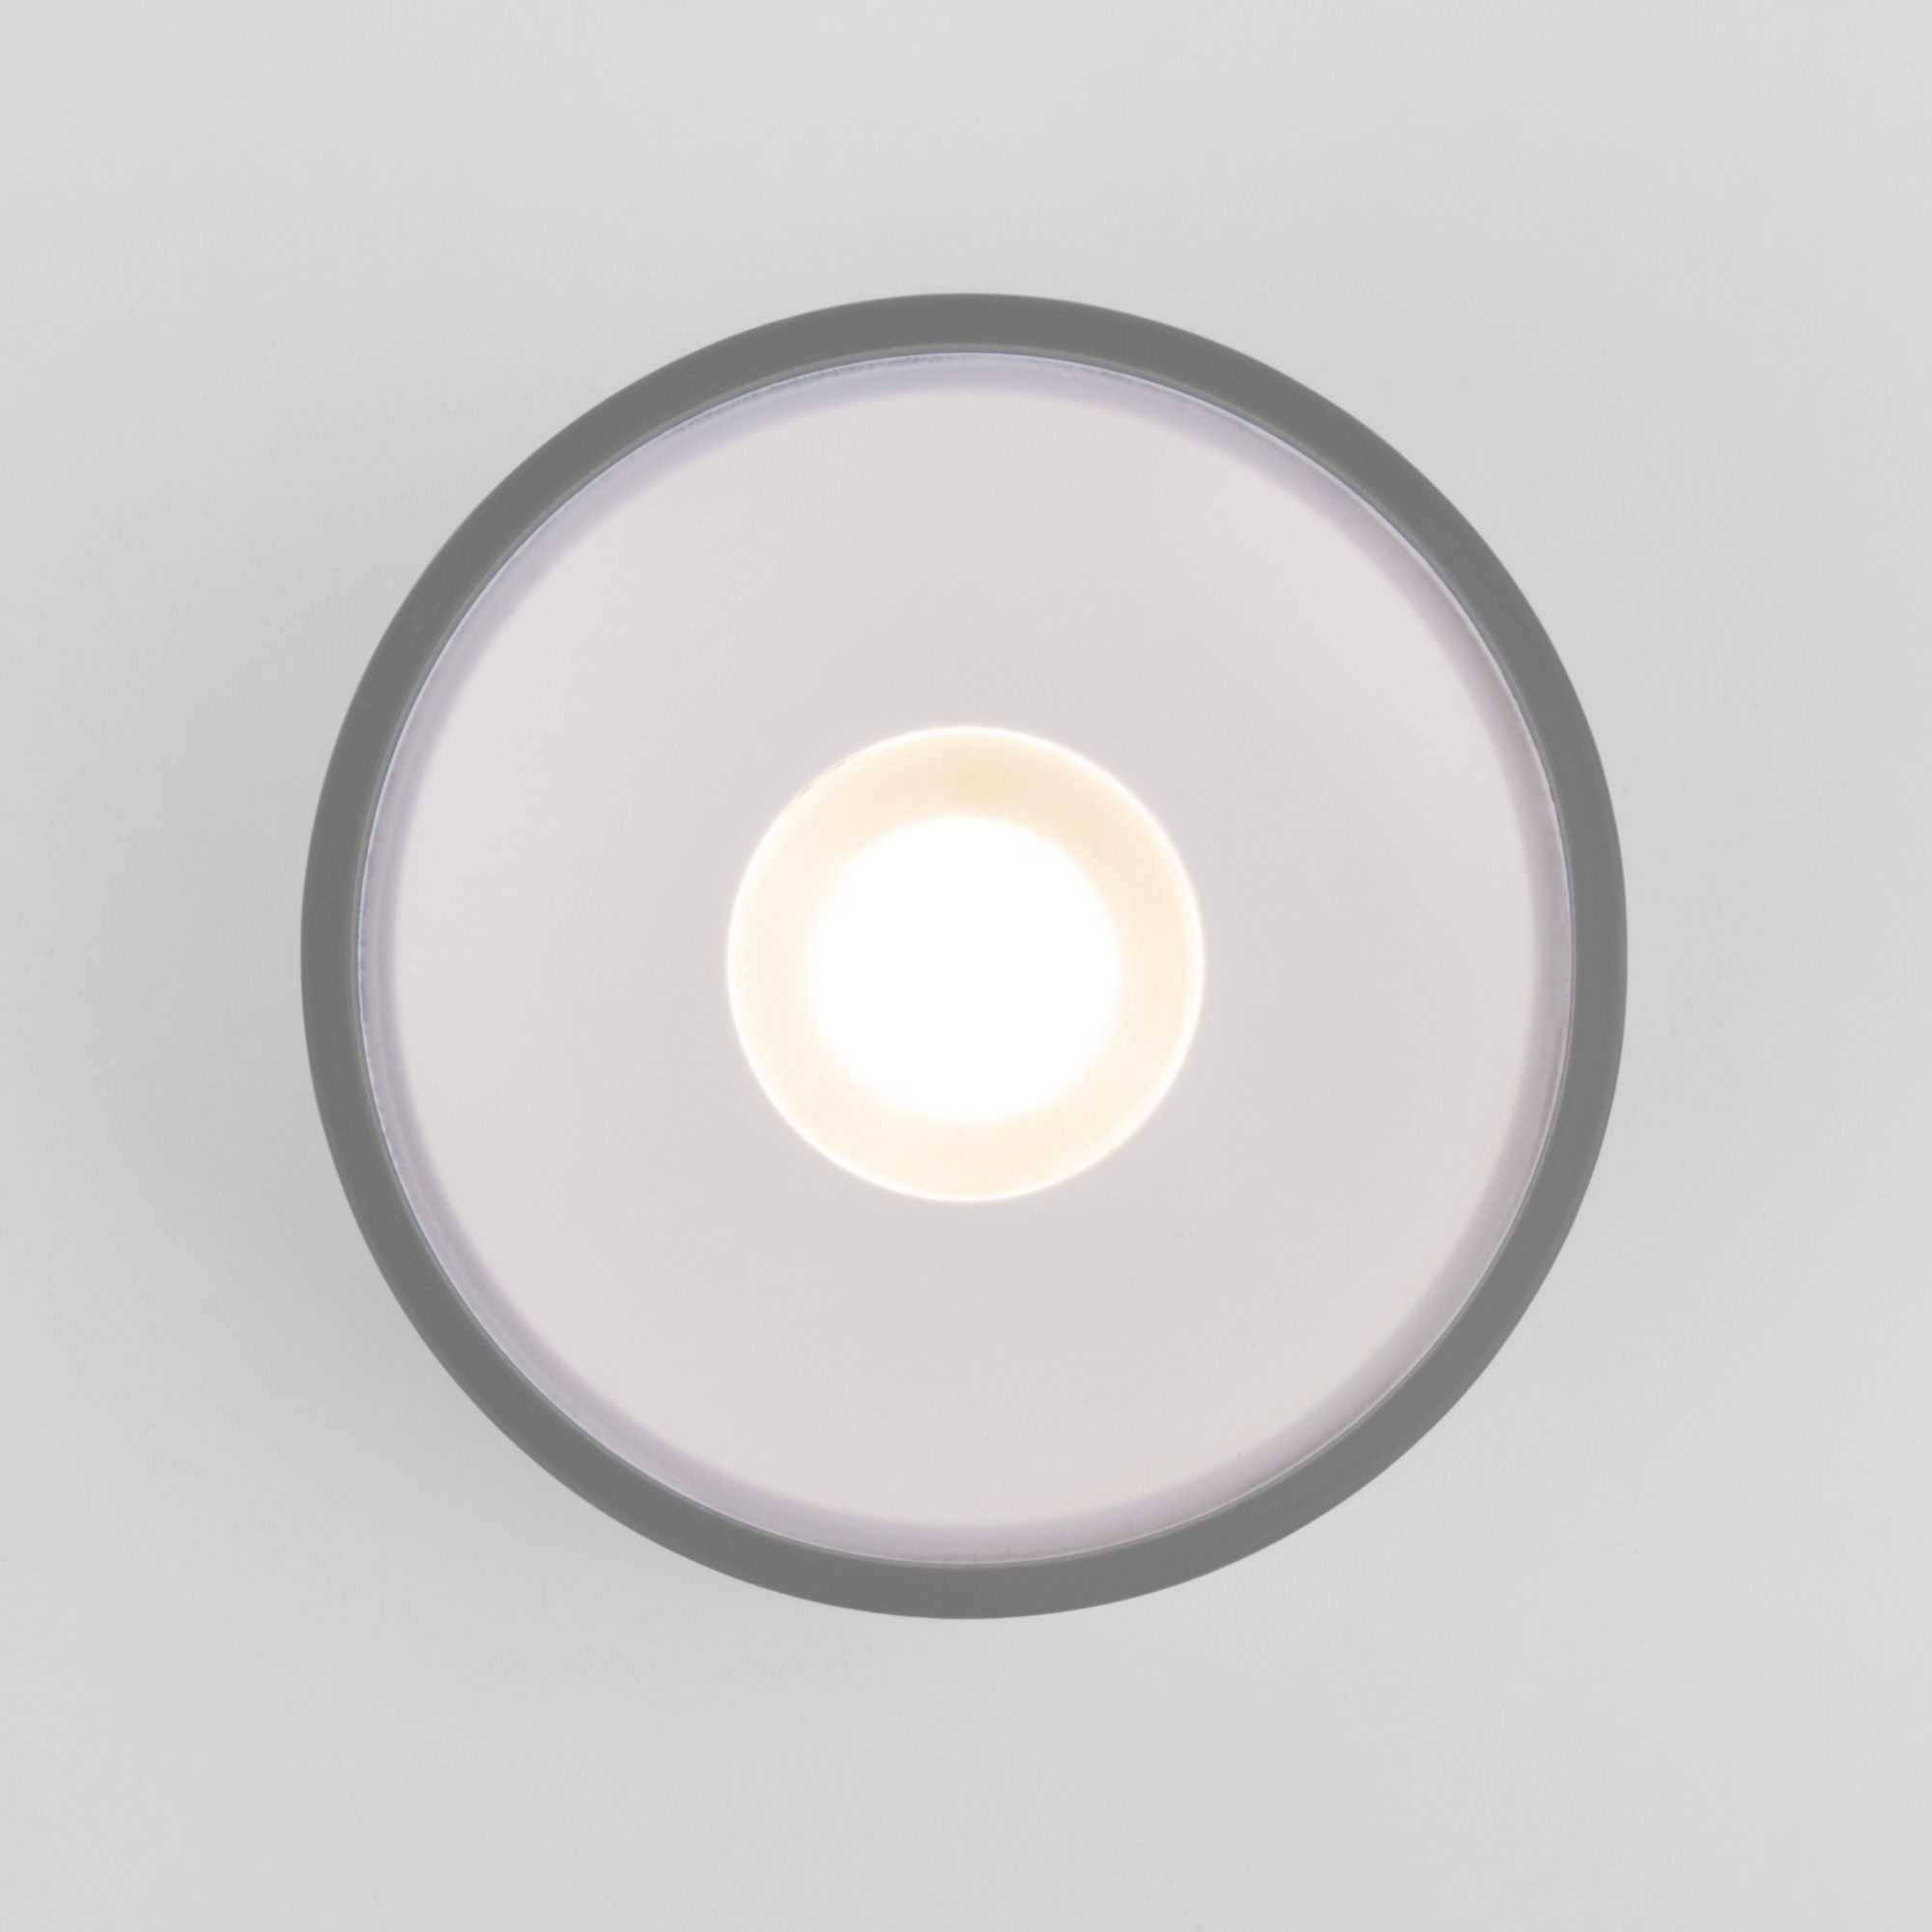 Накладной светодиодный влагозащищенный светильник IP65 35141/H серый